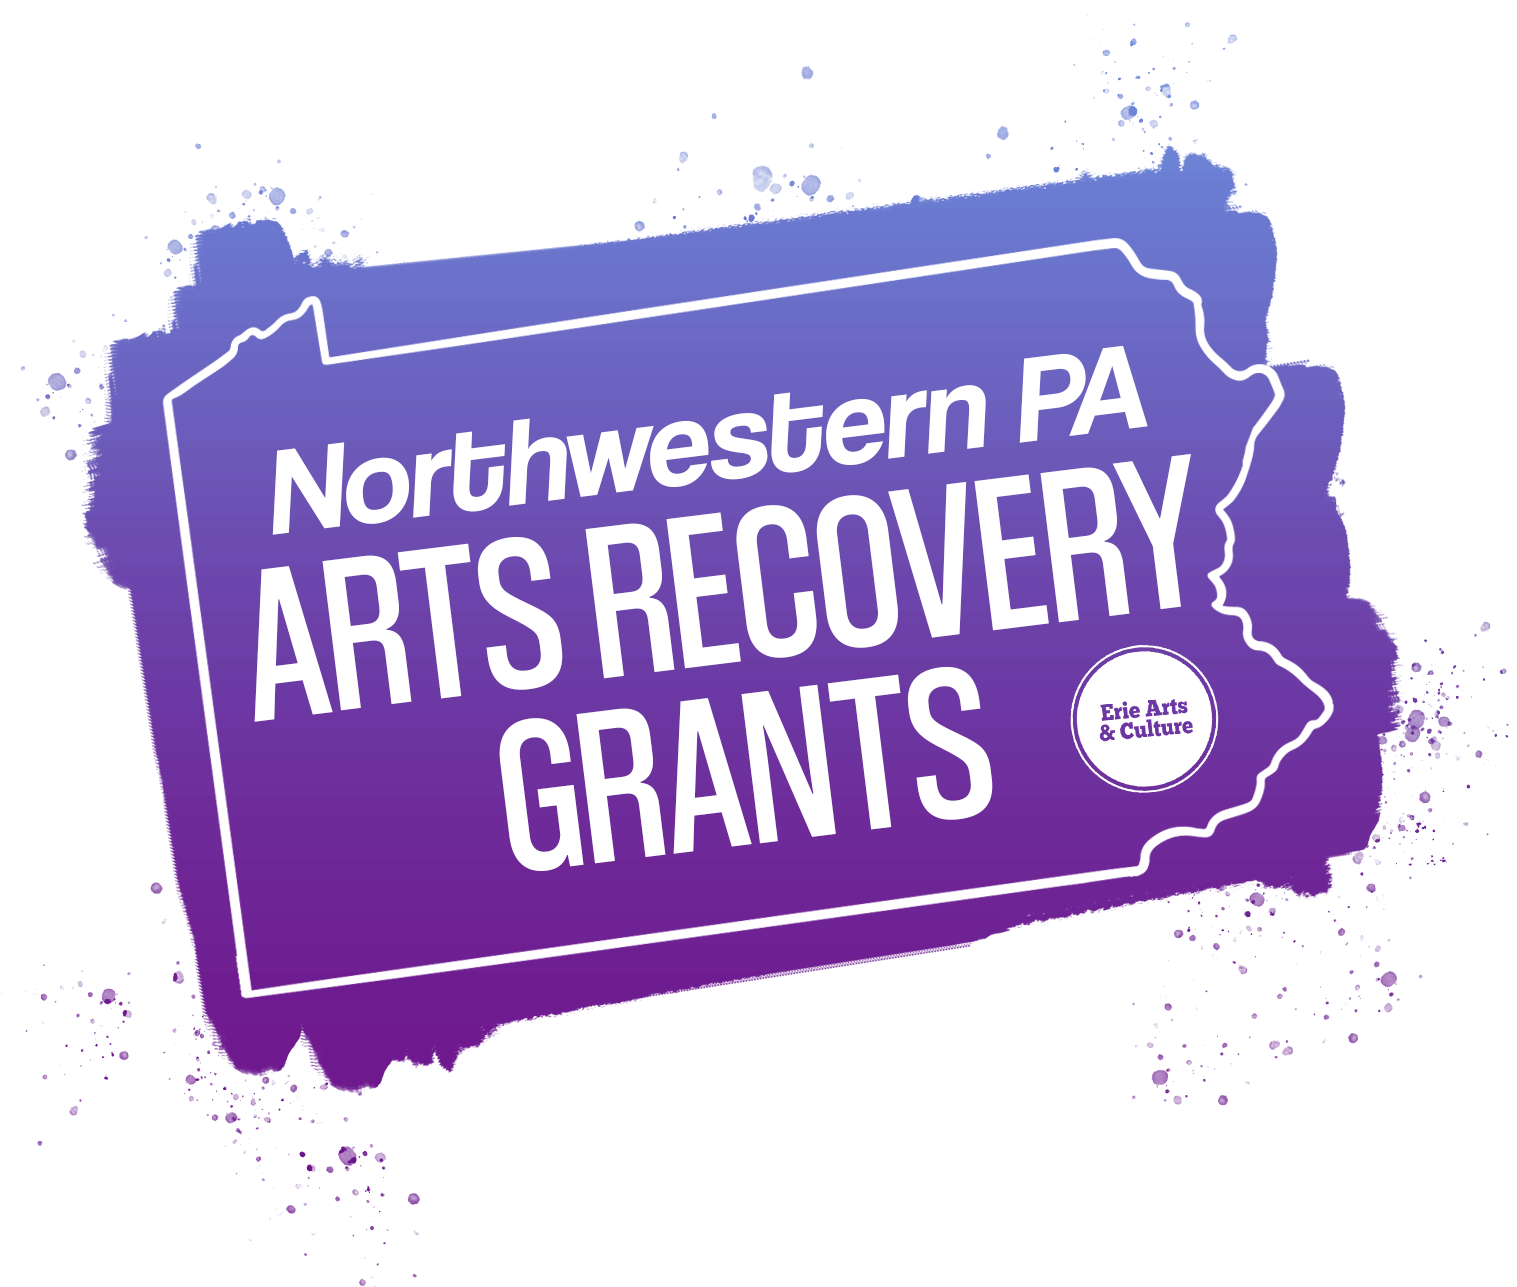 nwpa arts recovery grantsArtboard 2 v2